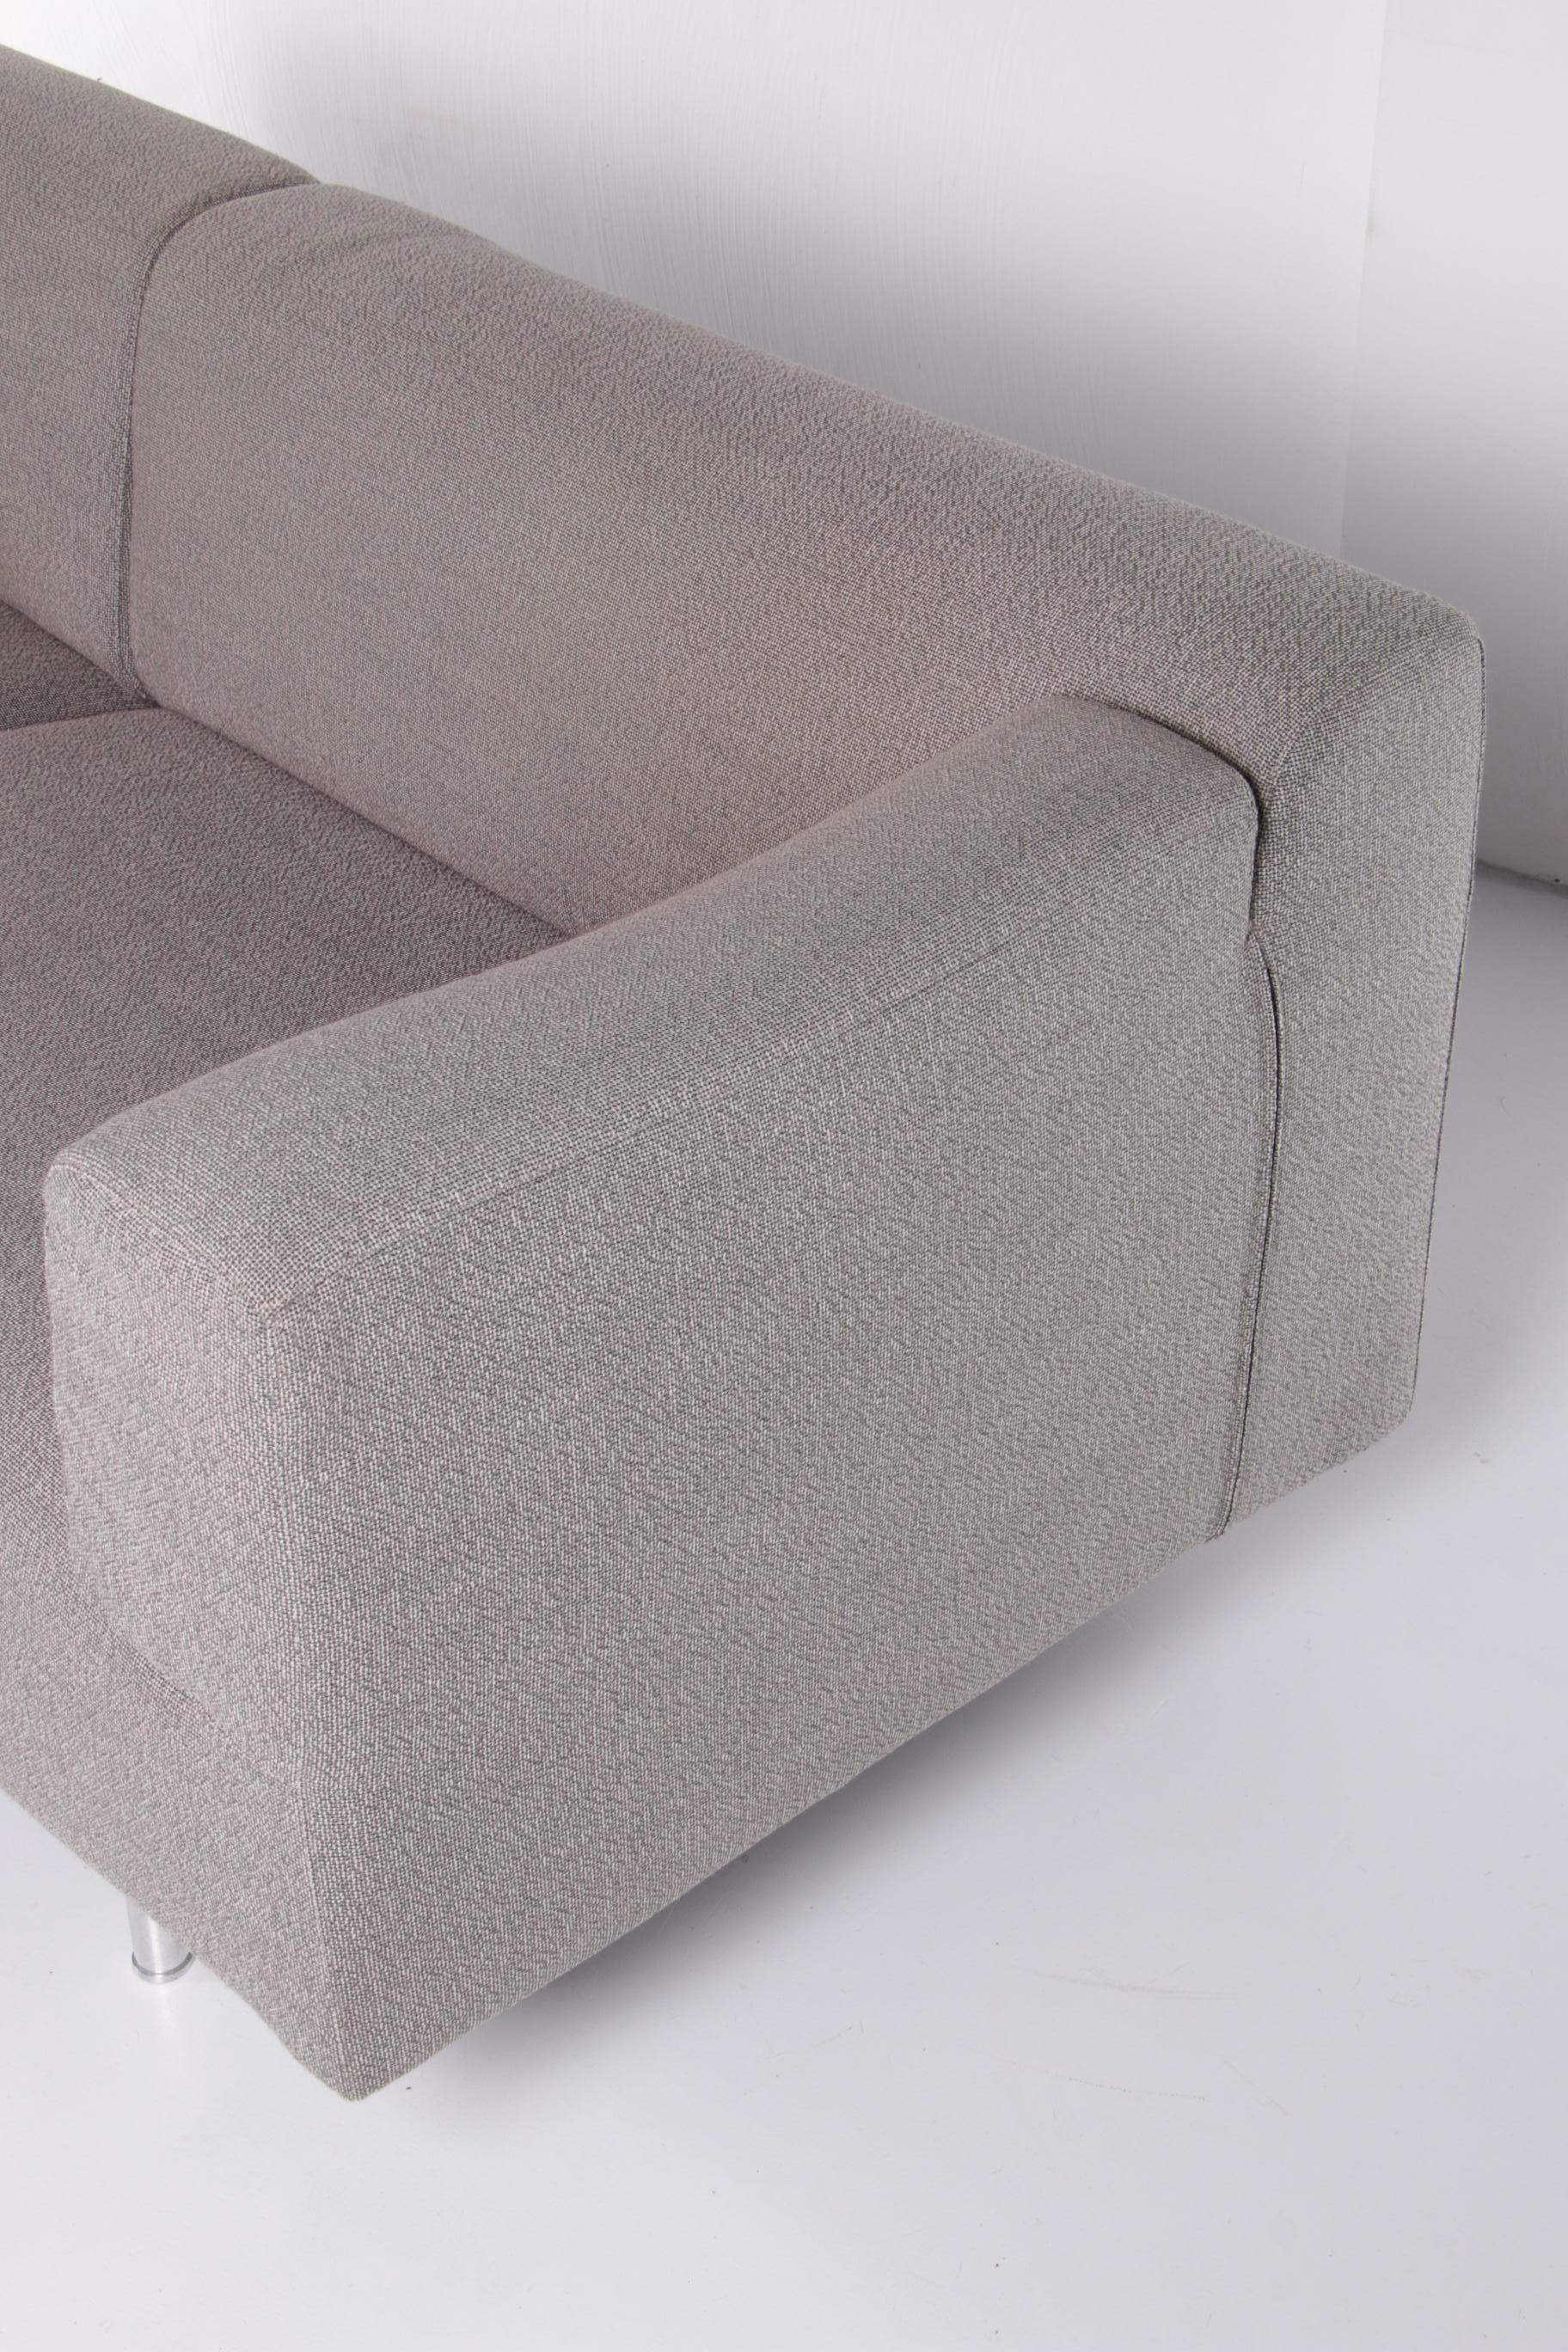 Upholstery Cassina Bank Model 250 Gray Melange, Design by Piero Lissoni